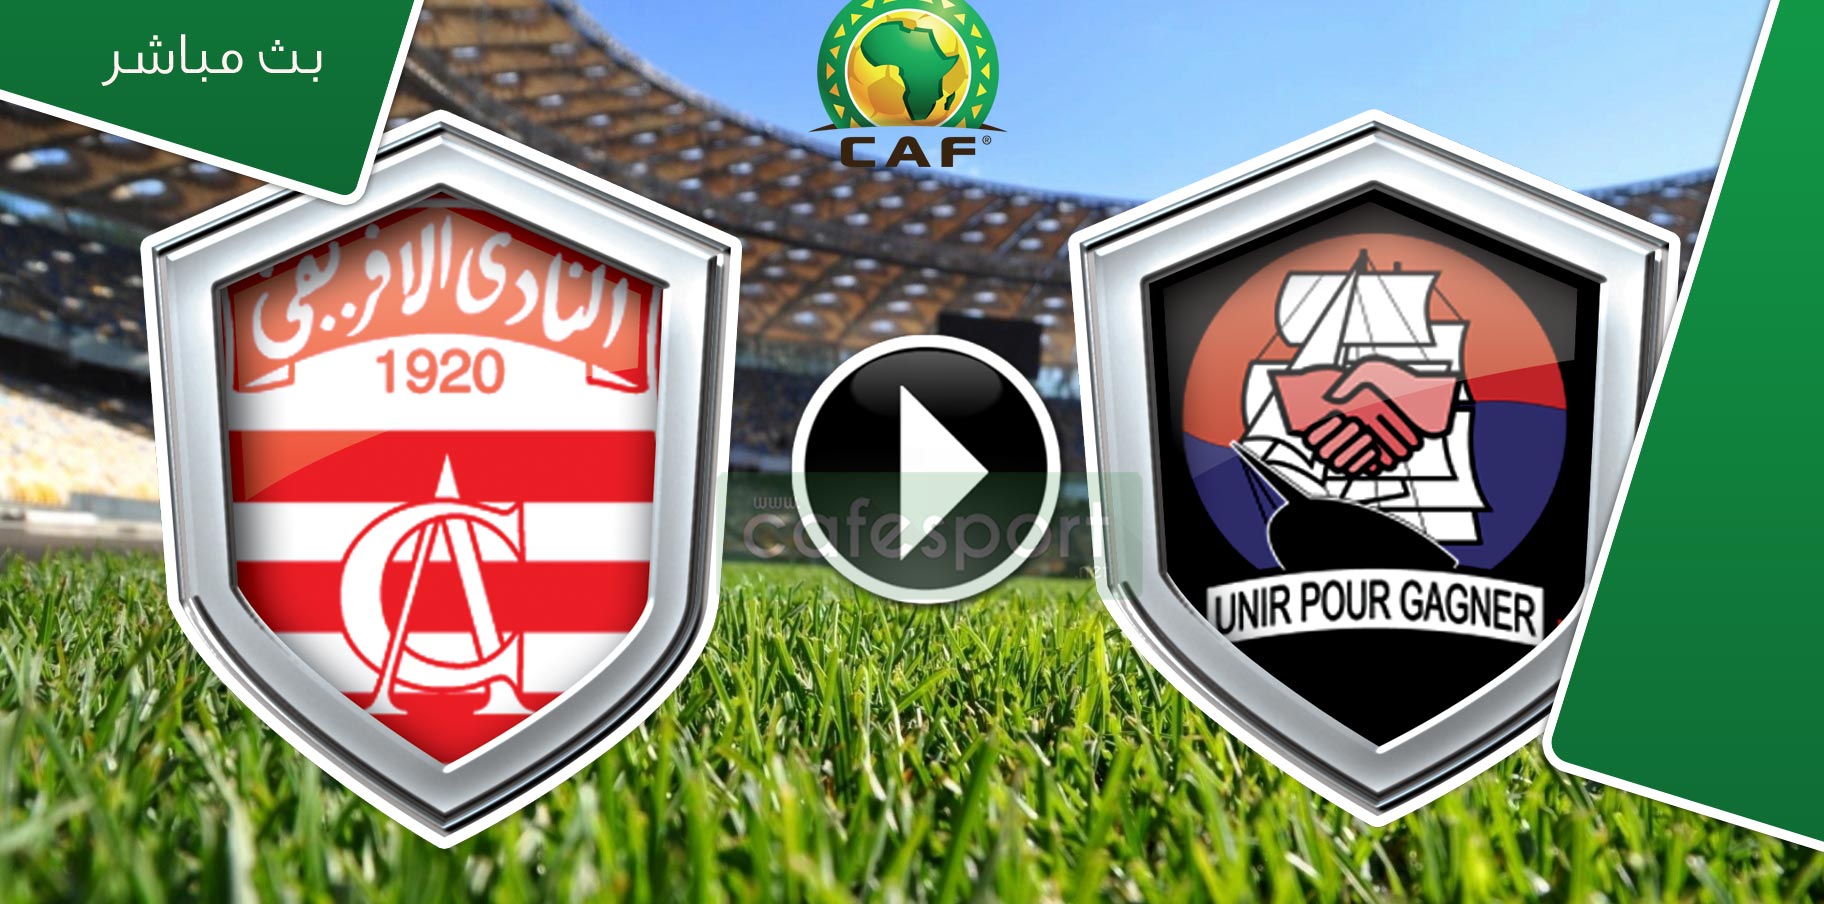 بث مباشر لمباراة للنادي الإفريقي ضد فريق بورت لويس